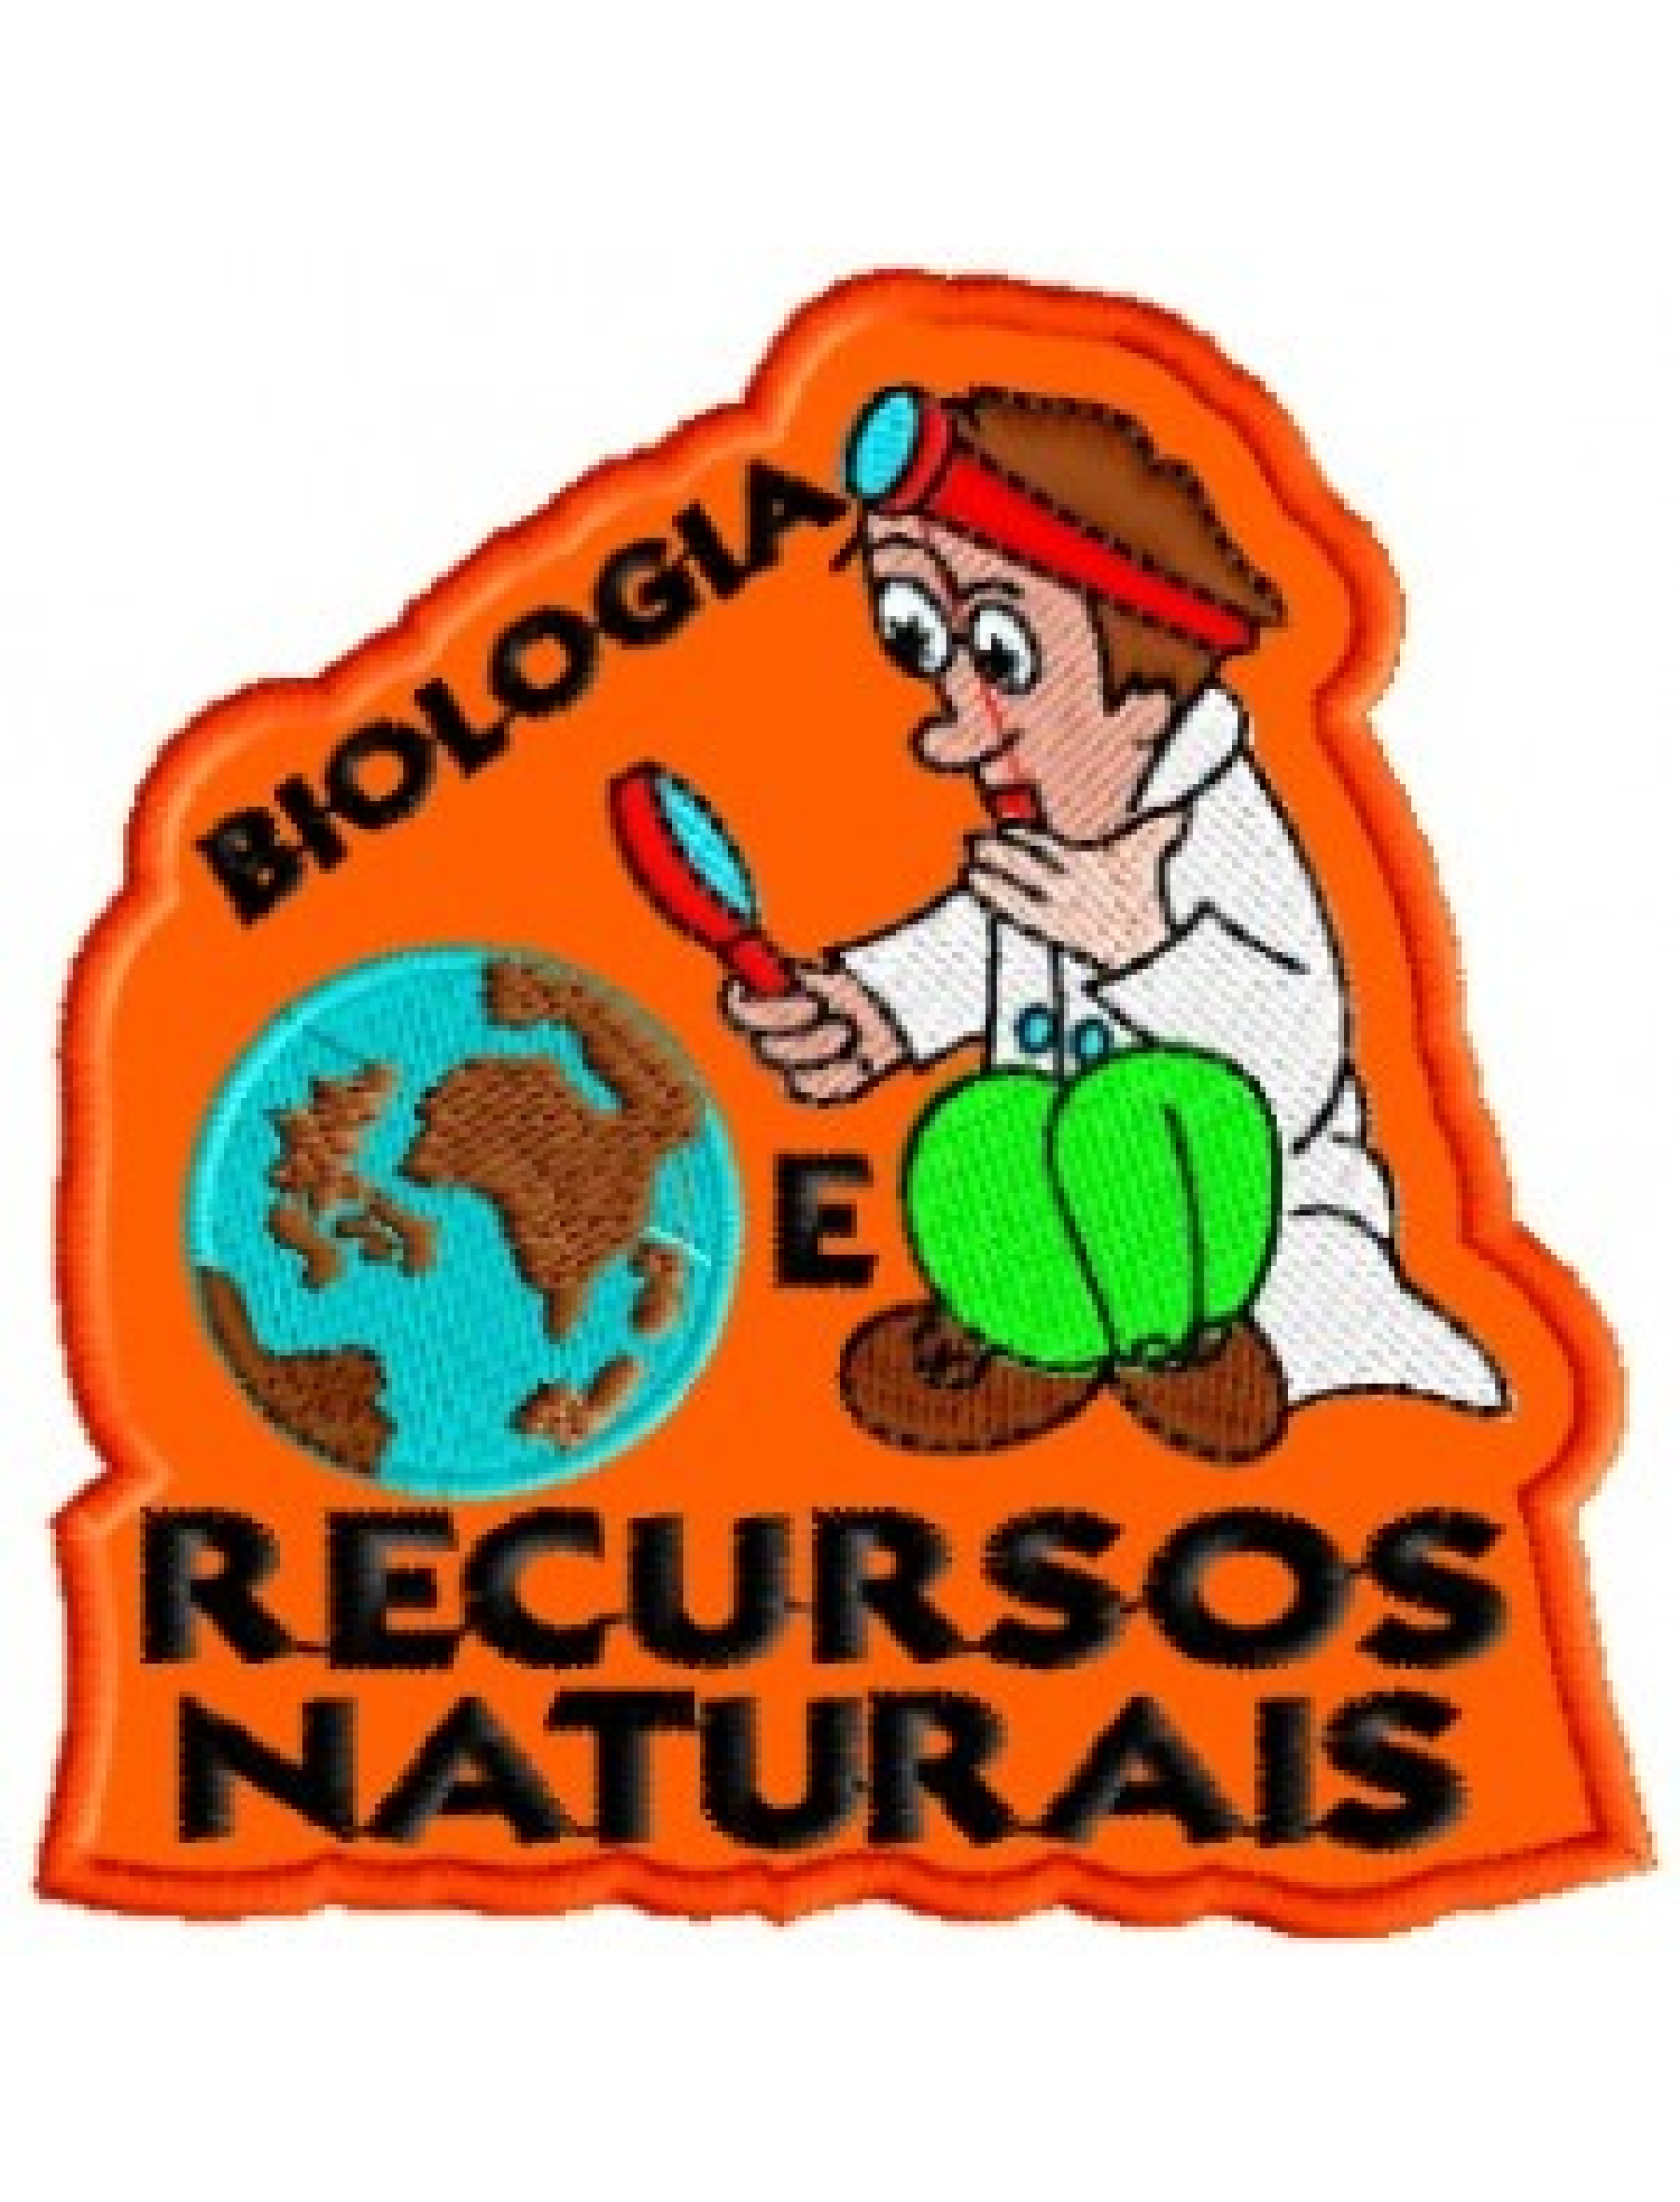 Biologia e Recursos Naturais